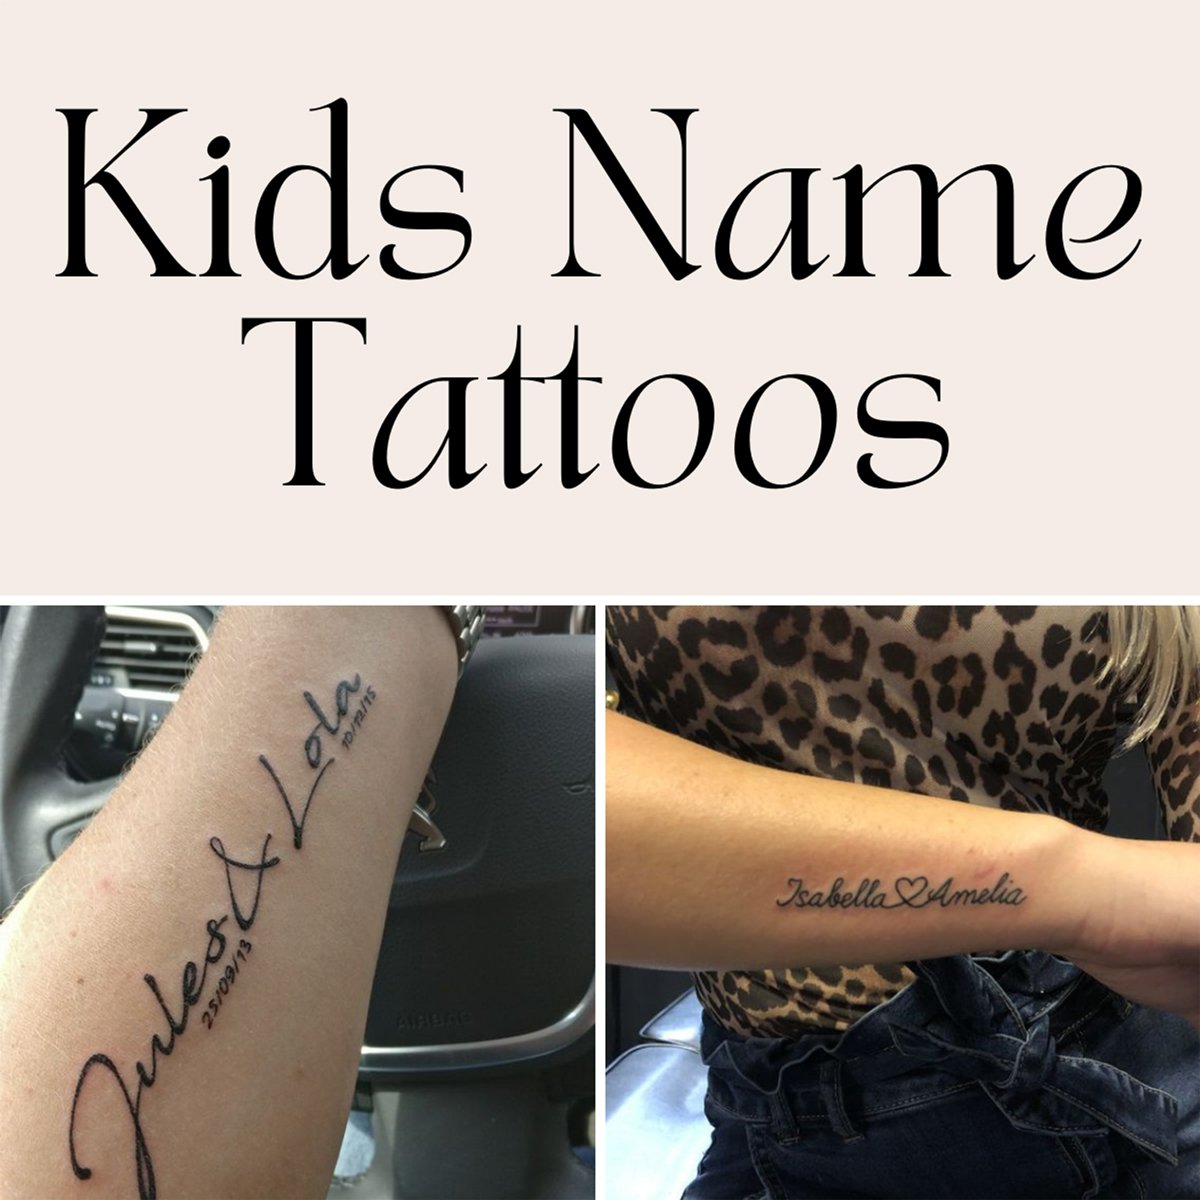 Kids Name Tattoos